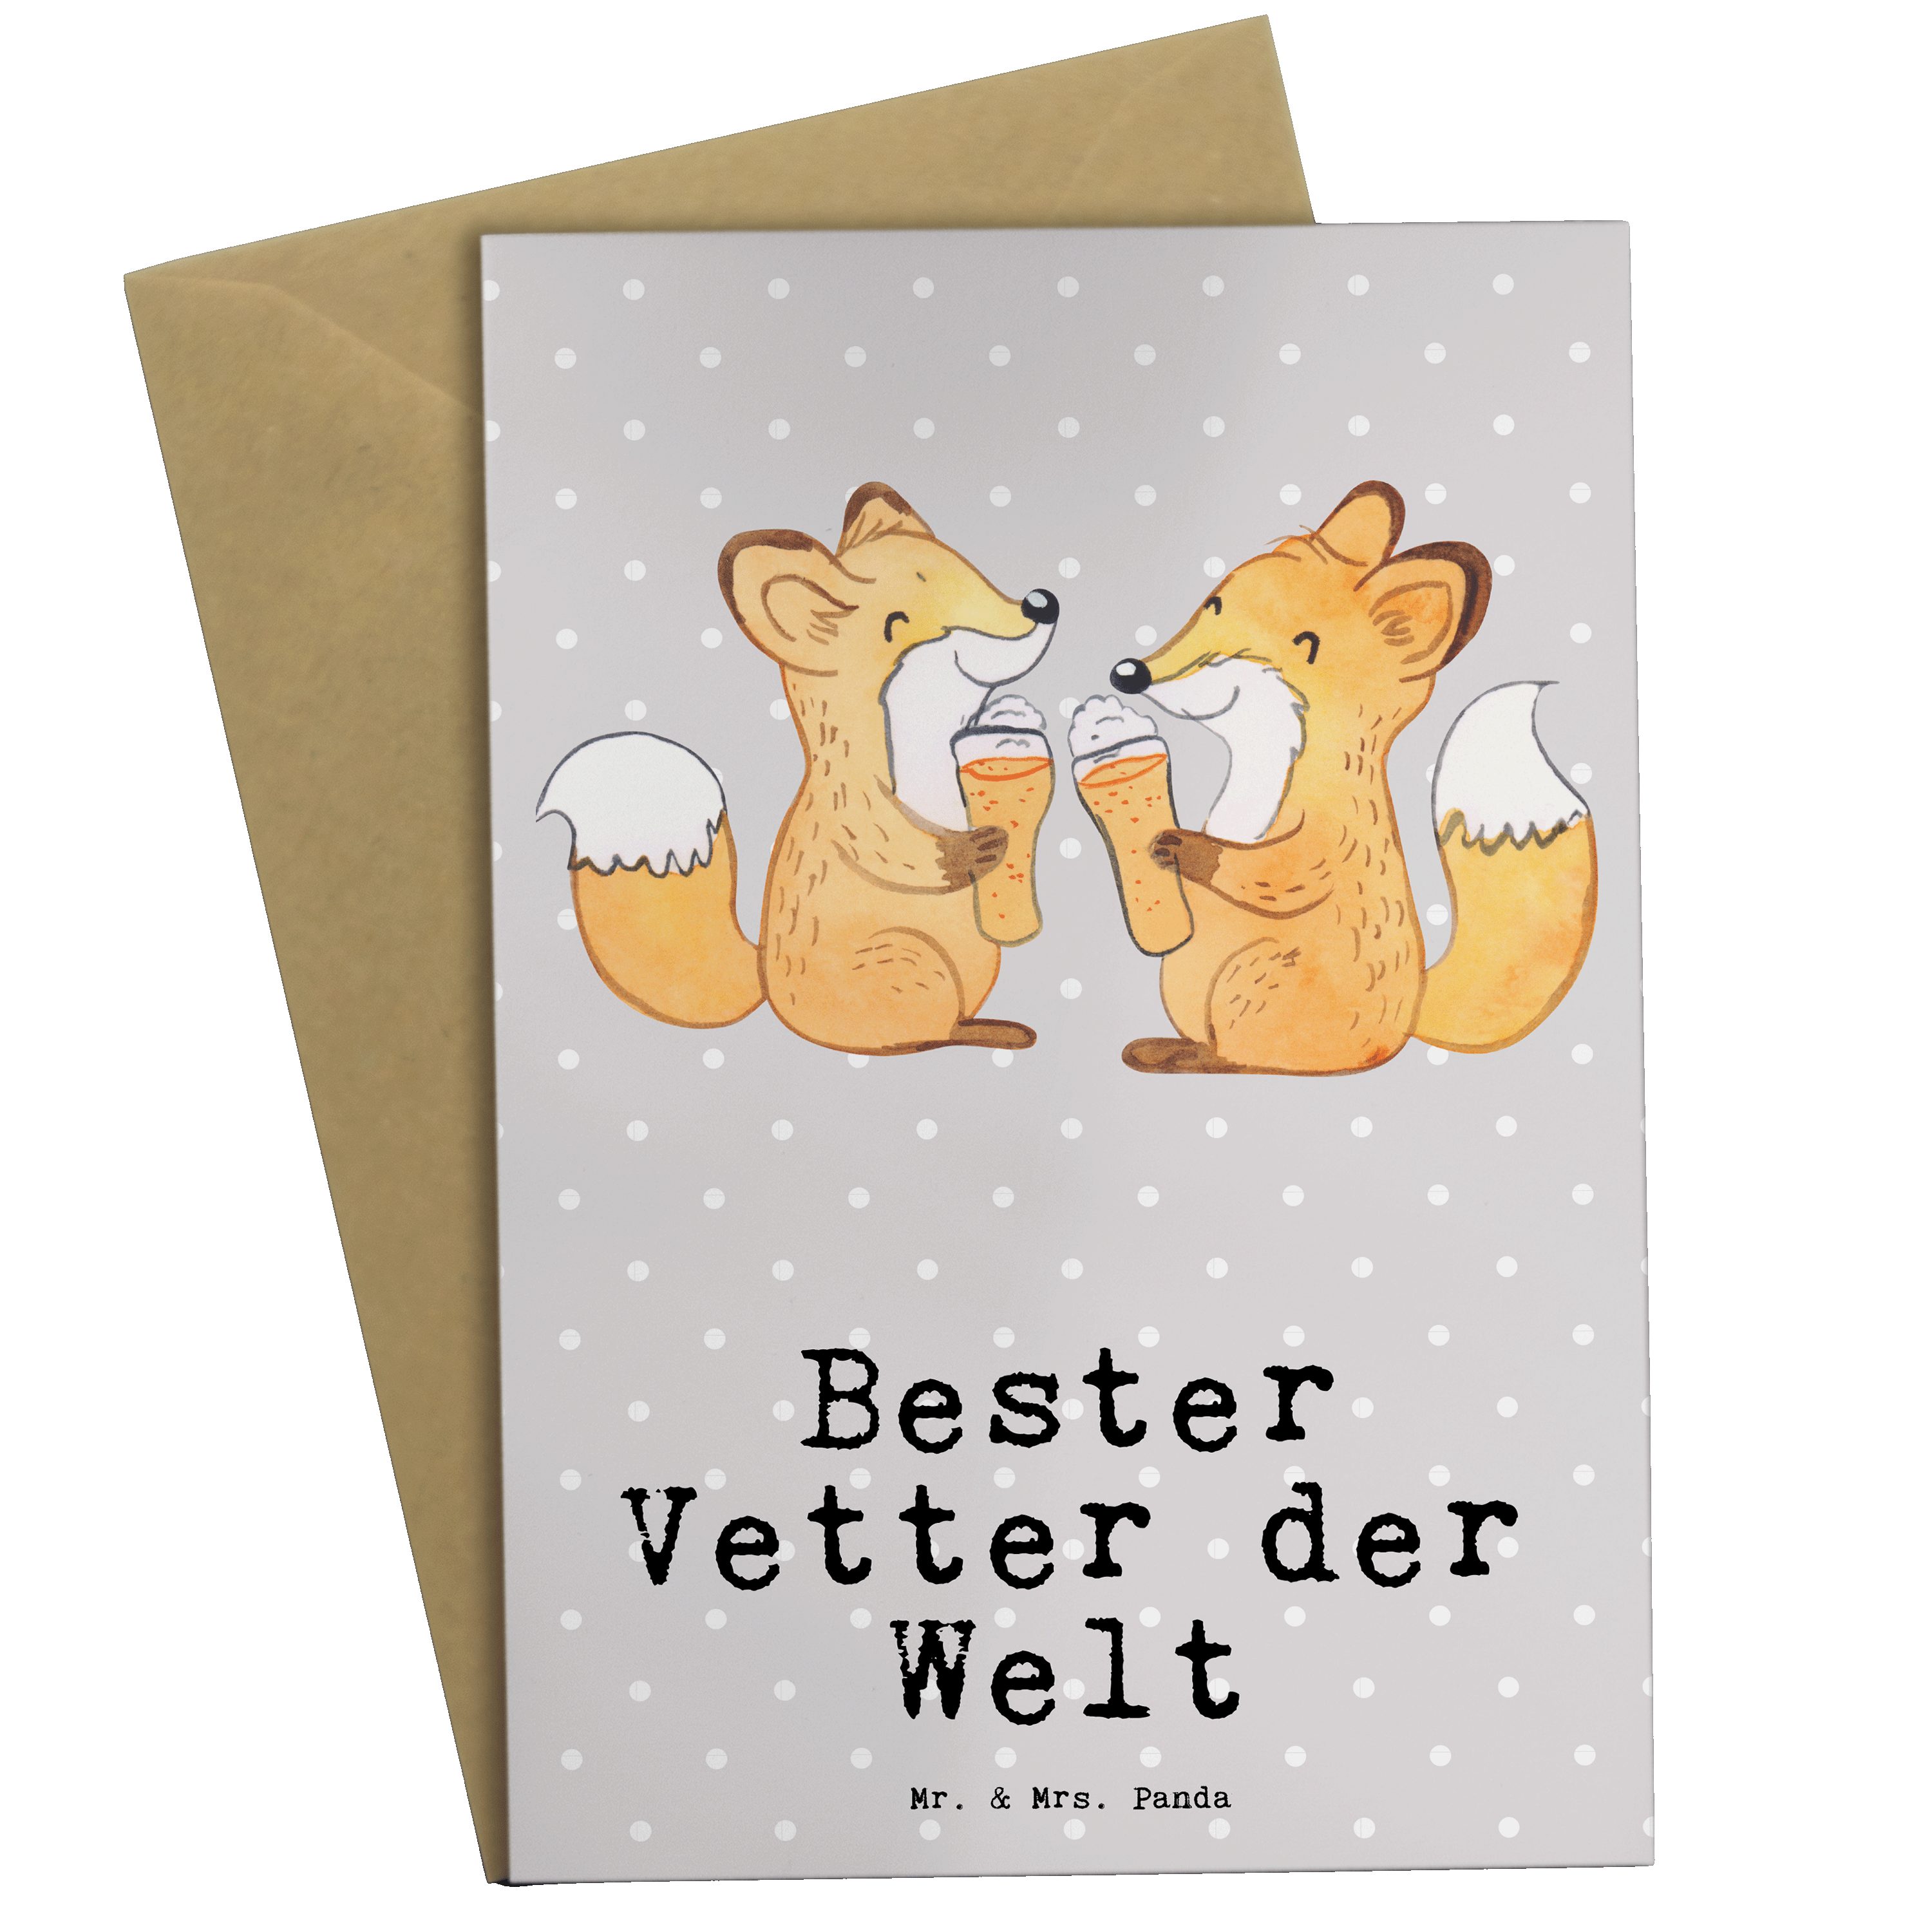 Mr. & Mrs. Panda Grußkarte Fuchs Bester Vetter der Welt - Grau Pastell - Geschenk, Einladungskar